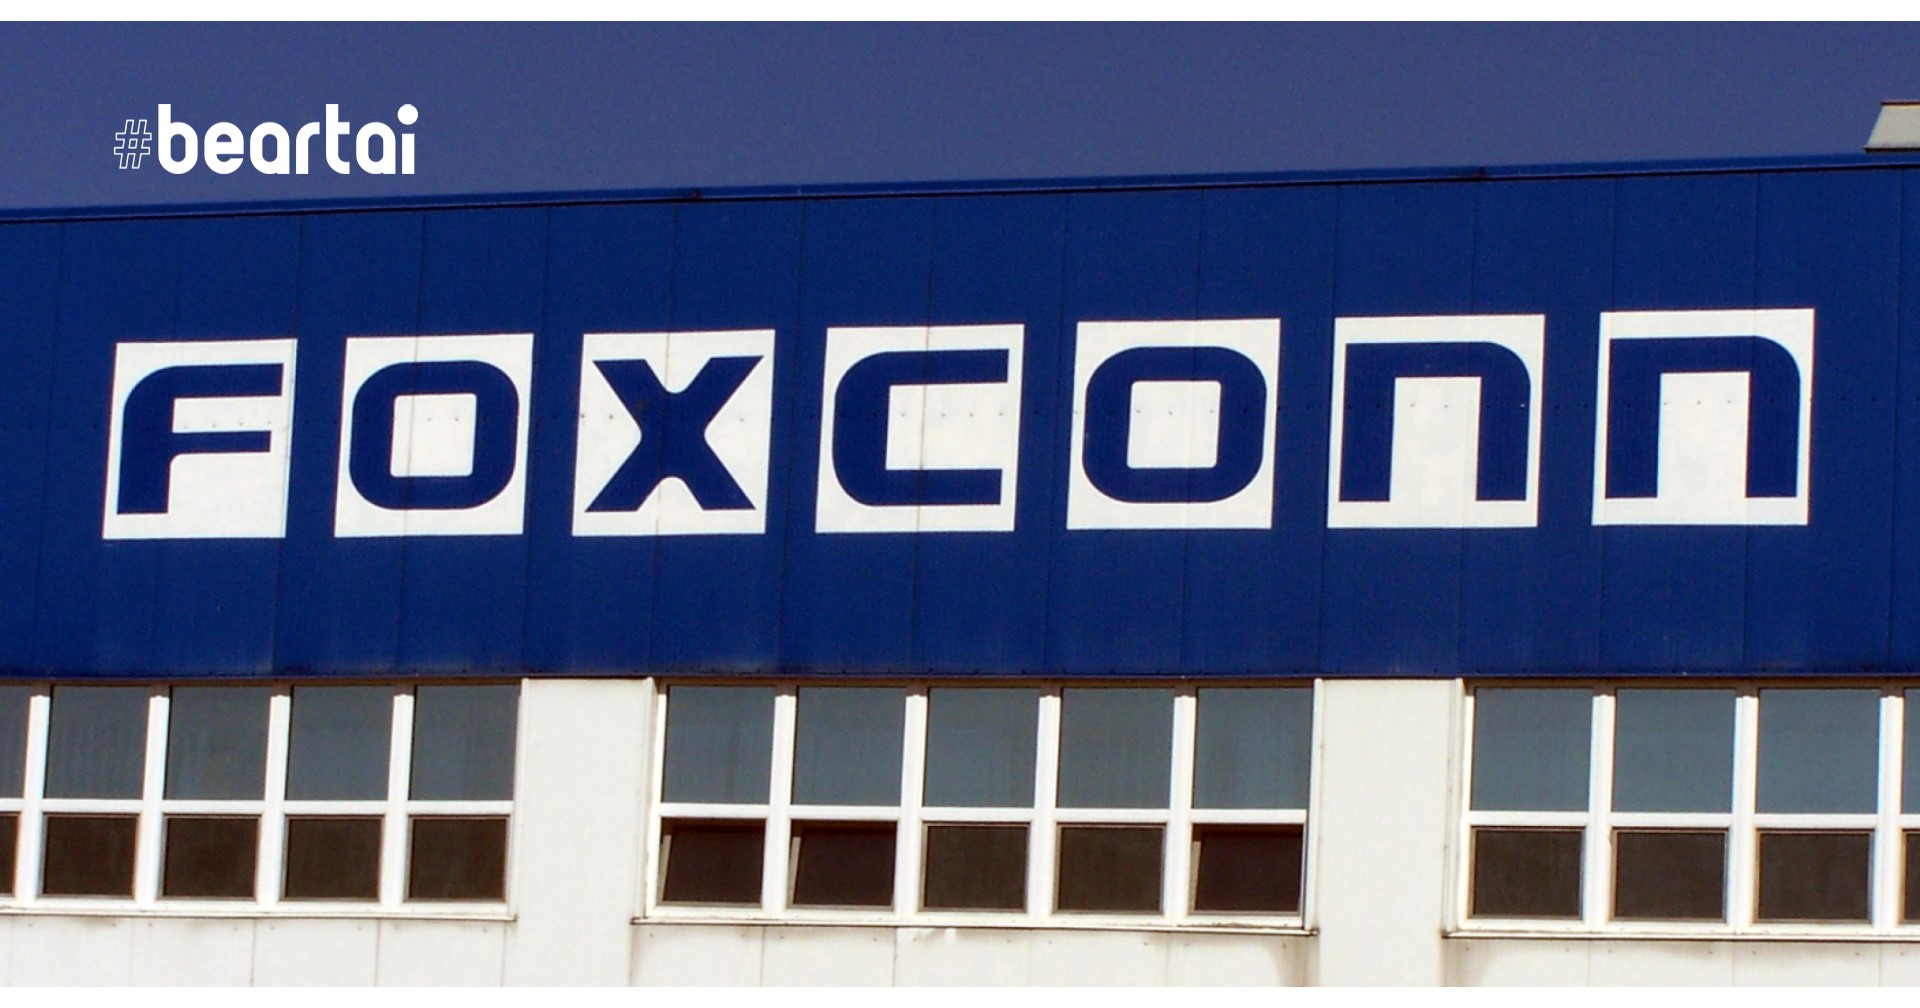 ‘เซินเจิ้น’ เมืองศูนย์กลางเทคโนโลยีของจีนถูกสั่งล็อกดาวน์ ทำให้ Foxconn ต้องหยุดการผลิตชิปไปด้วย!